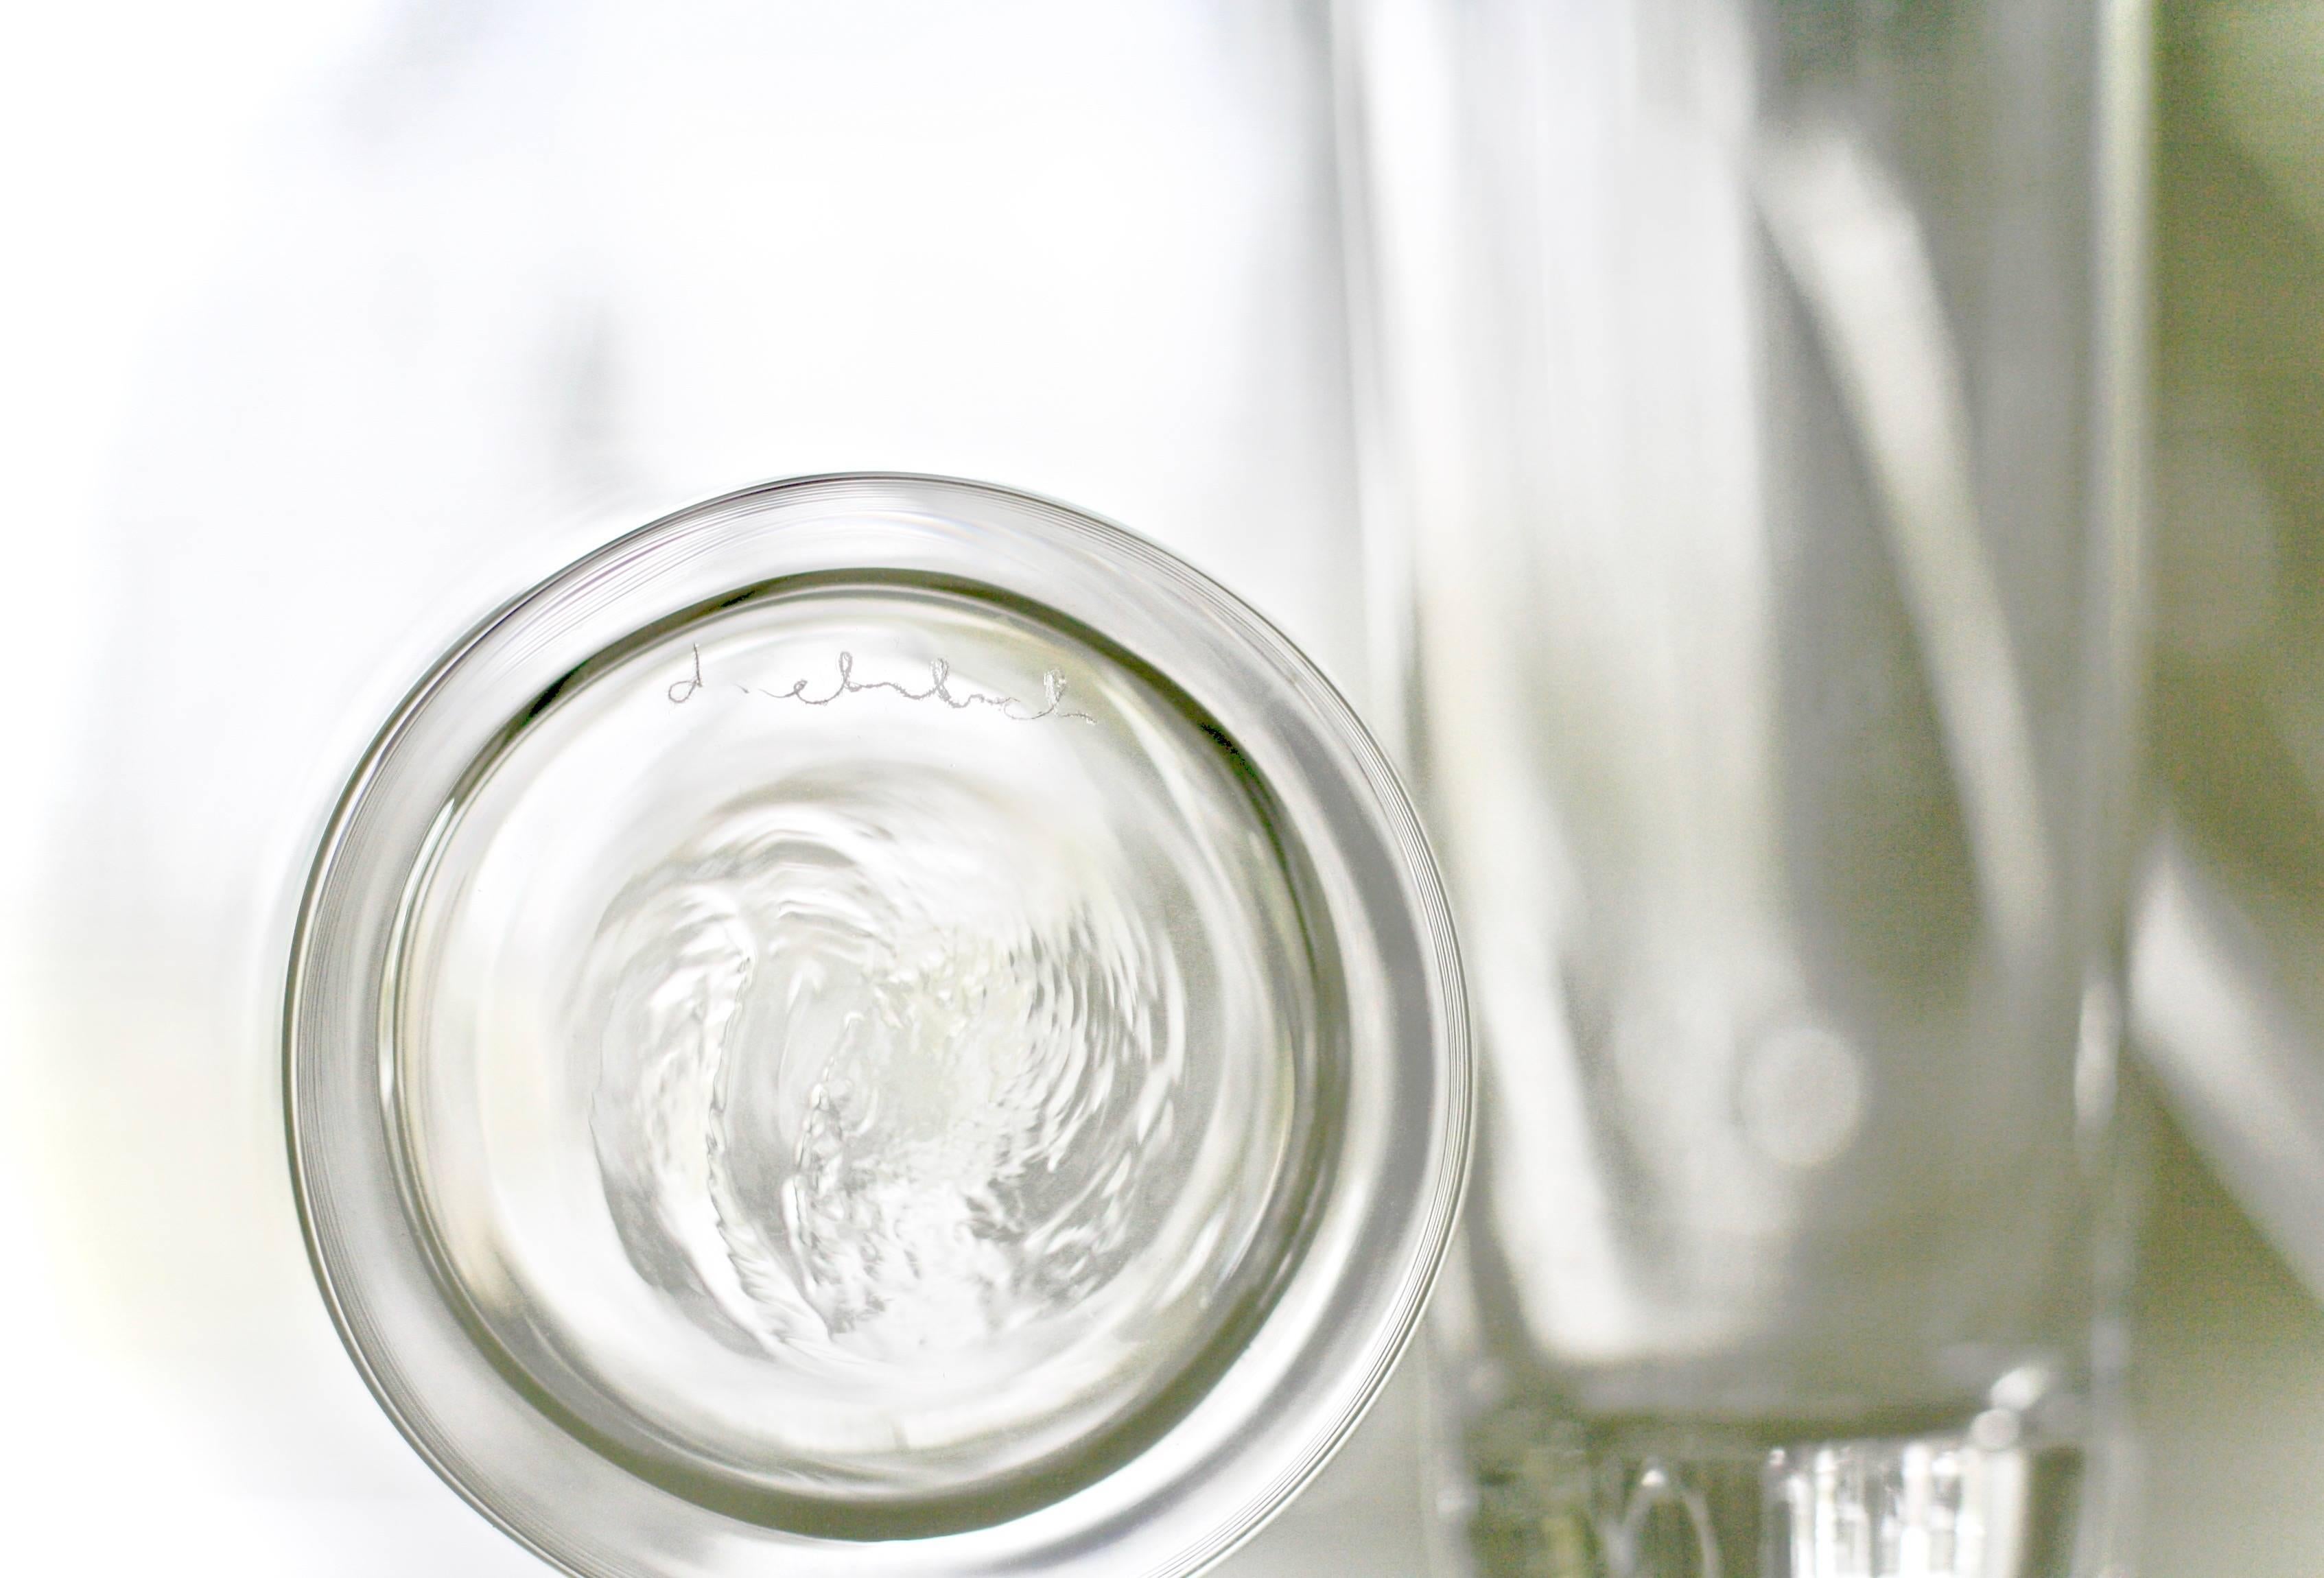 American Set of 2 Deborah Ehrlich Simple Crystal Water Glasses, Hand Blown in Sweden For Sale